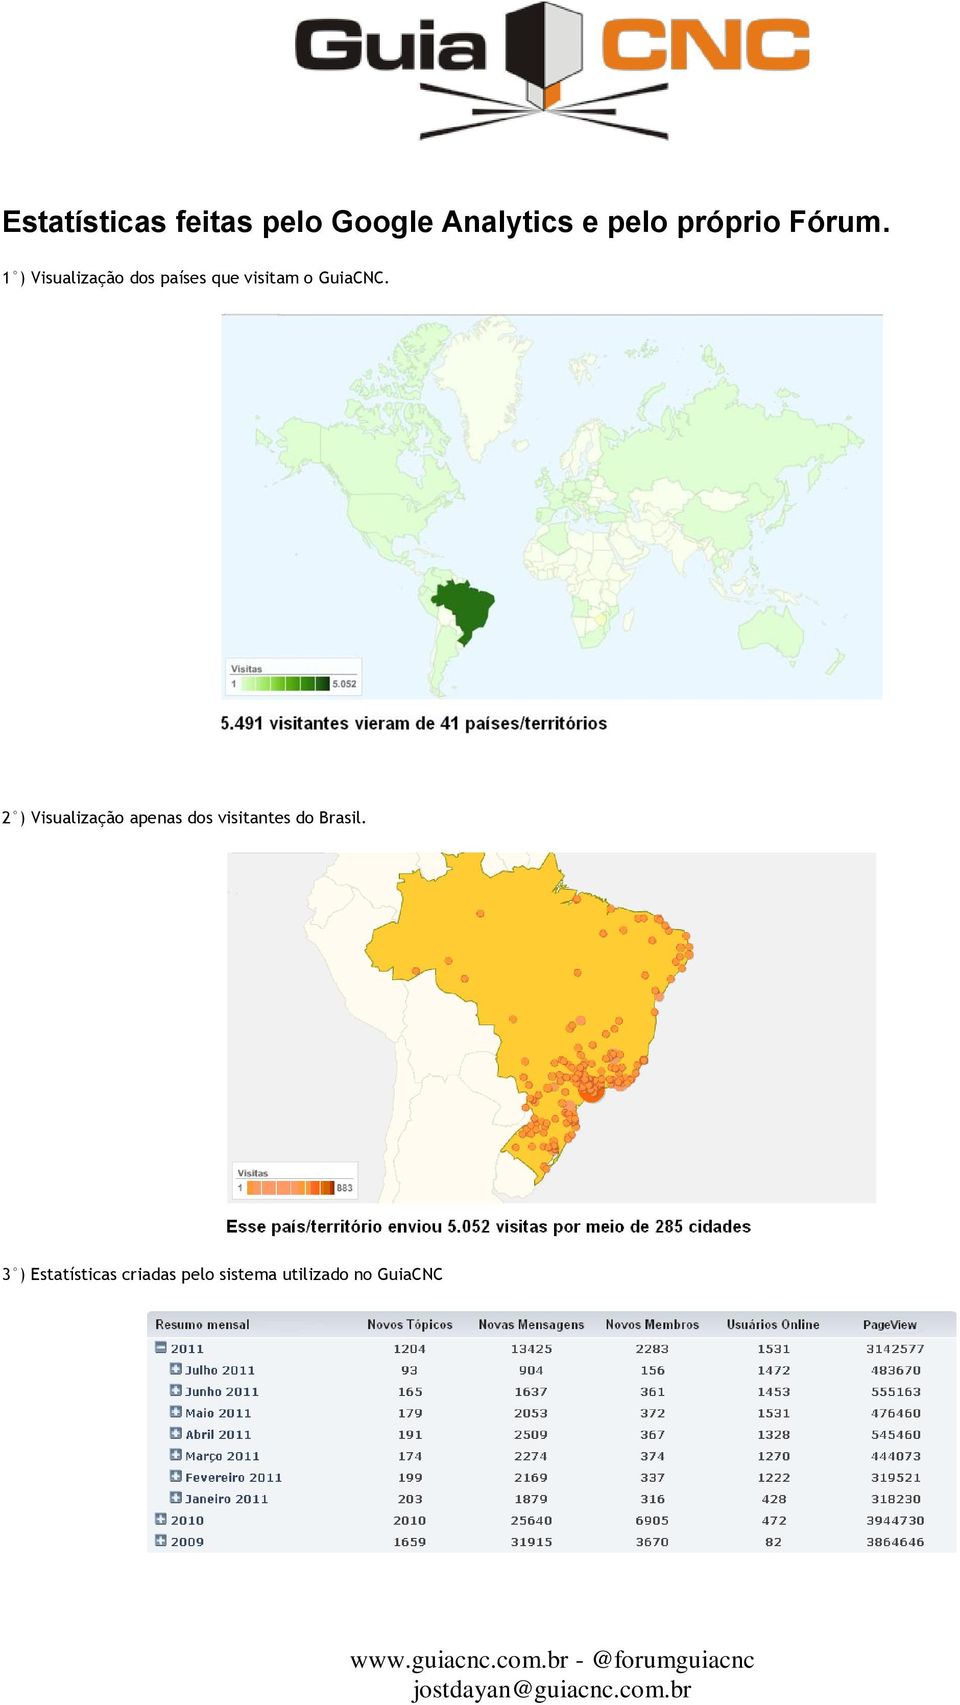 1 ) Visualização dos países que visitam o GuiaCNC.